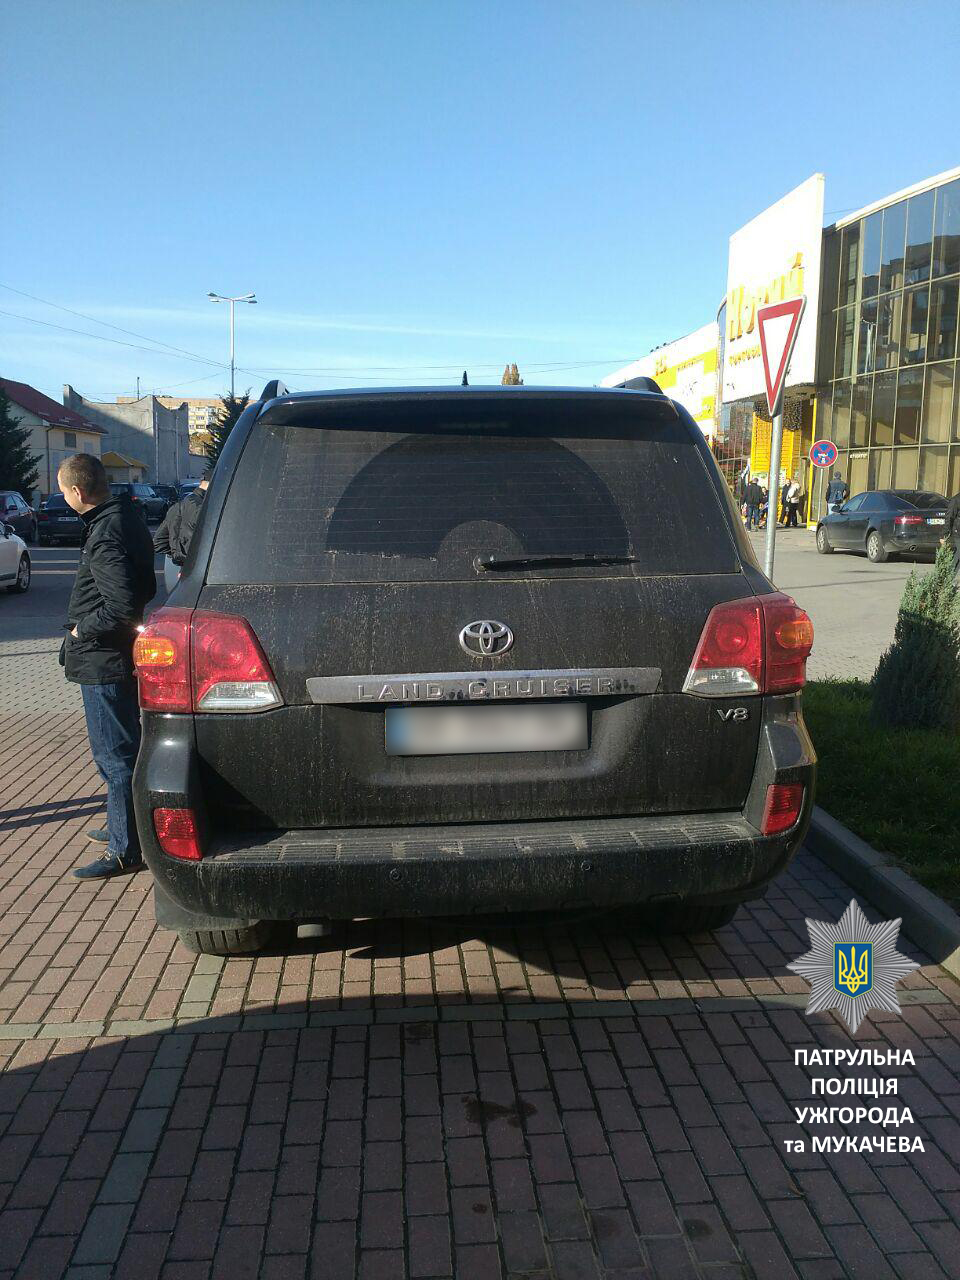 Вчера около 3 часов дня на улице Бестужева патрульные обнаружили автомобиль Toyota Land Cruiser, номер которого согласно имеющейся базы данных был снят с учета. 